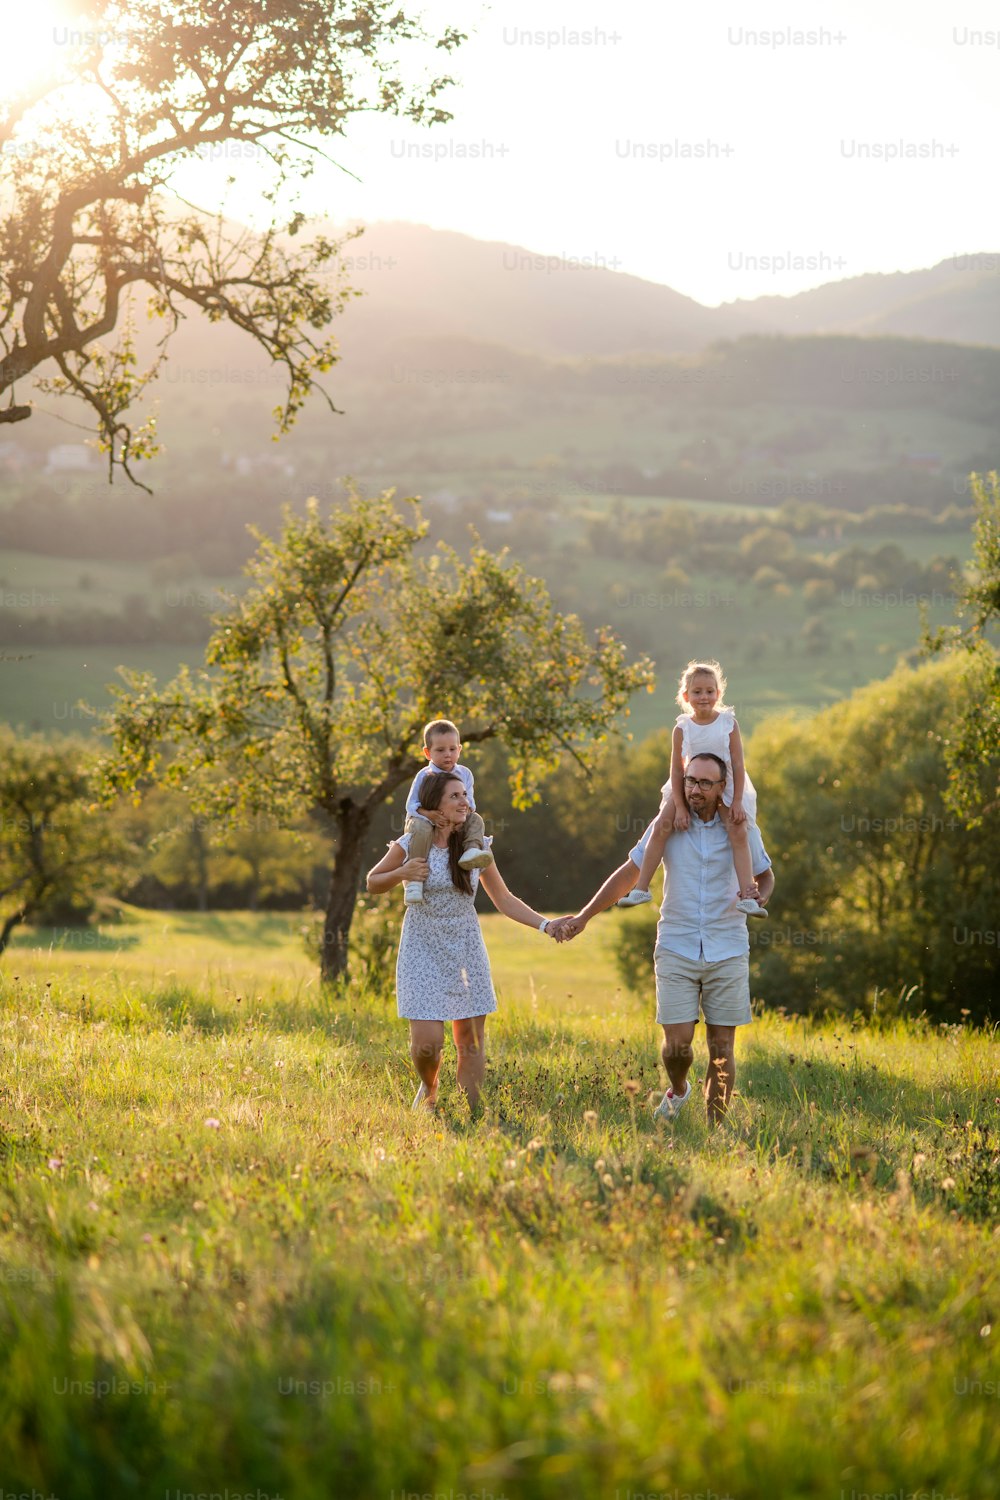 해질녘 야외 초원을 걷고 있는 두 명의 어린 자녀와 함께 피기백 타기를 하는 가족의 전면 보기.